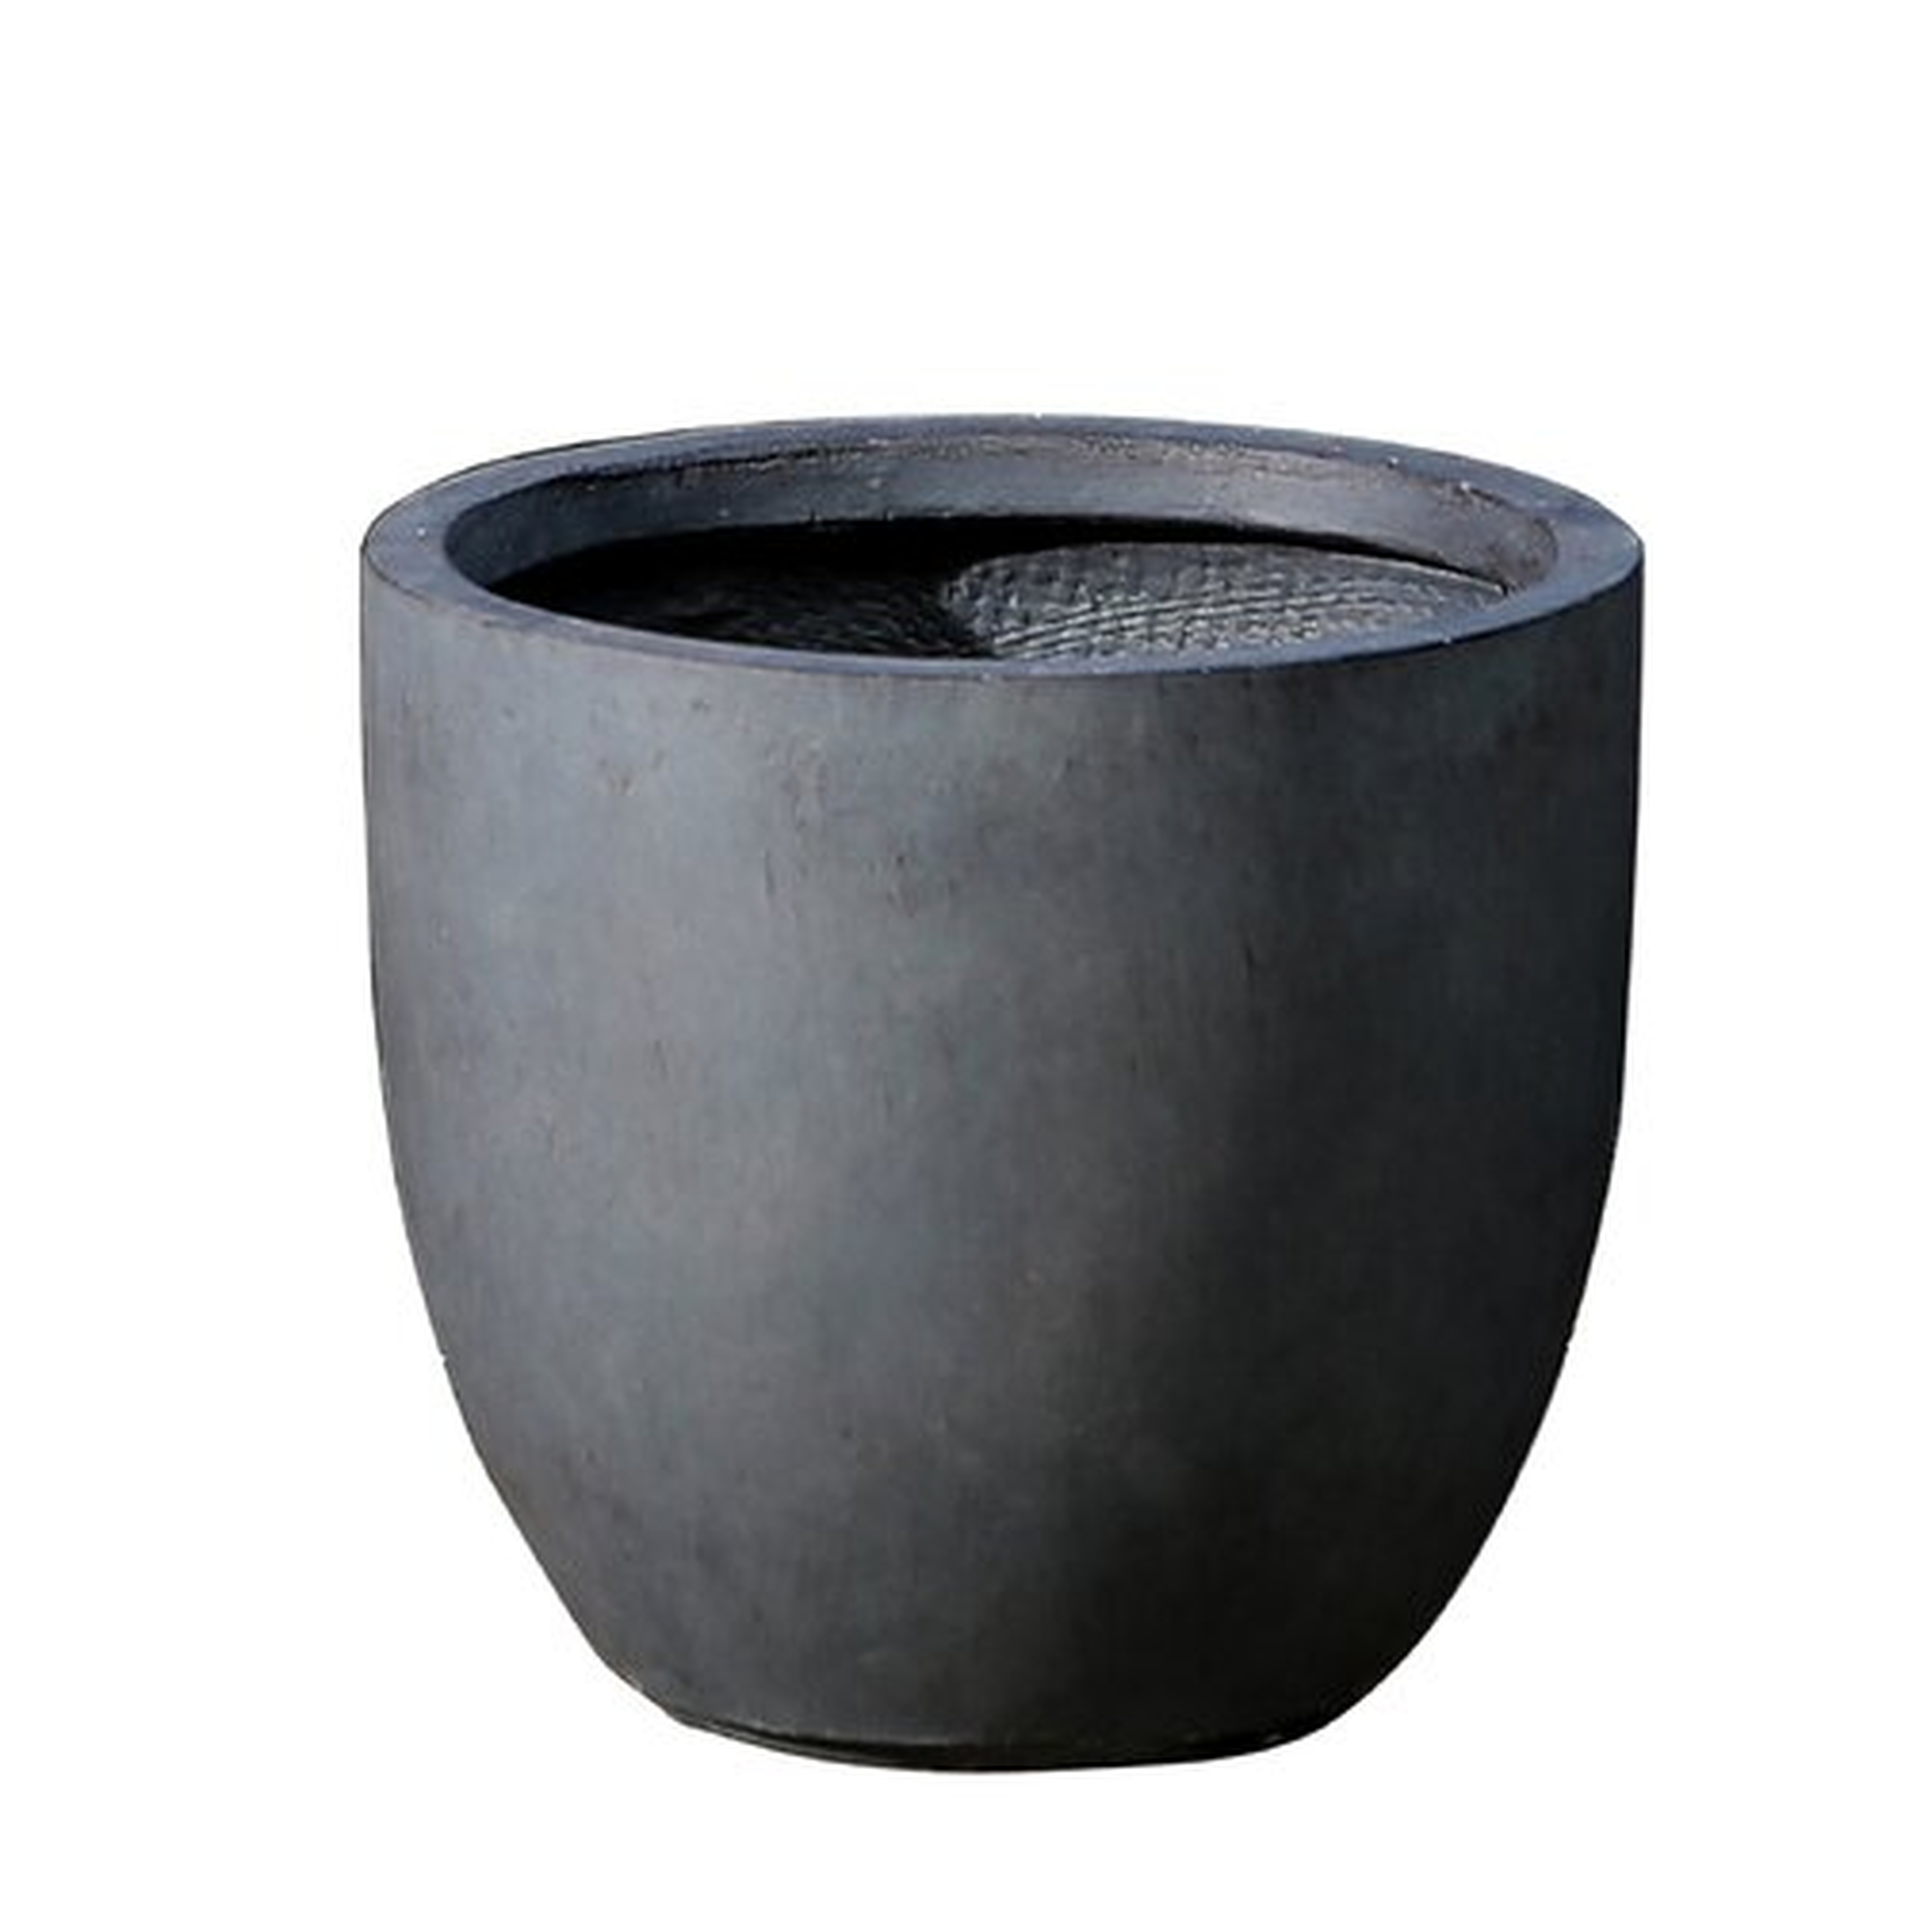 Adamell Round Fiberclay Pot Planter - Dark Gray - 13.8"x13.8" - Wayfair